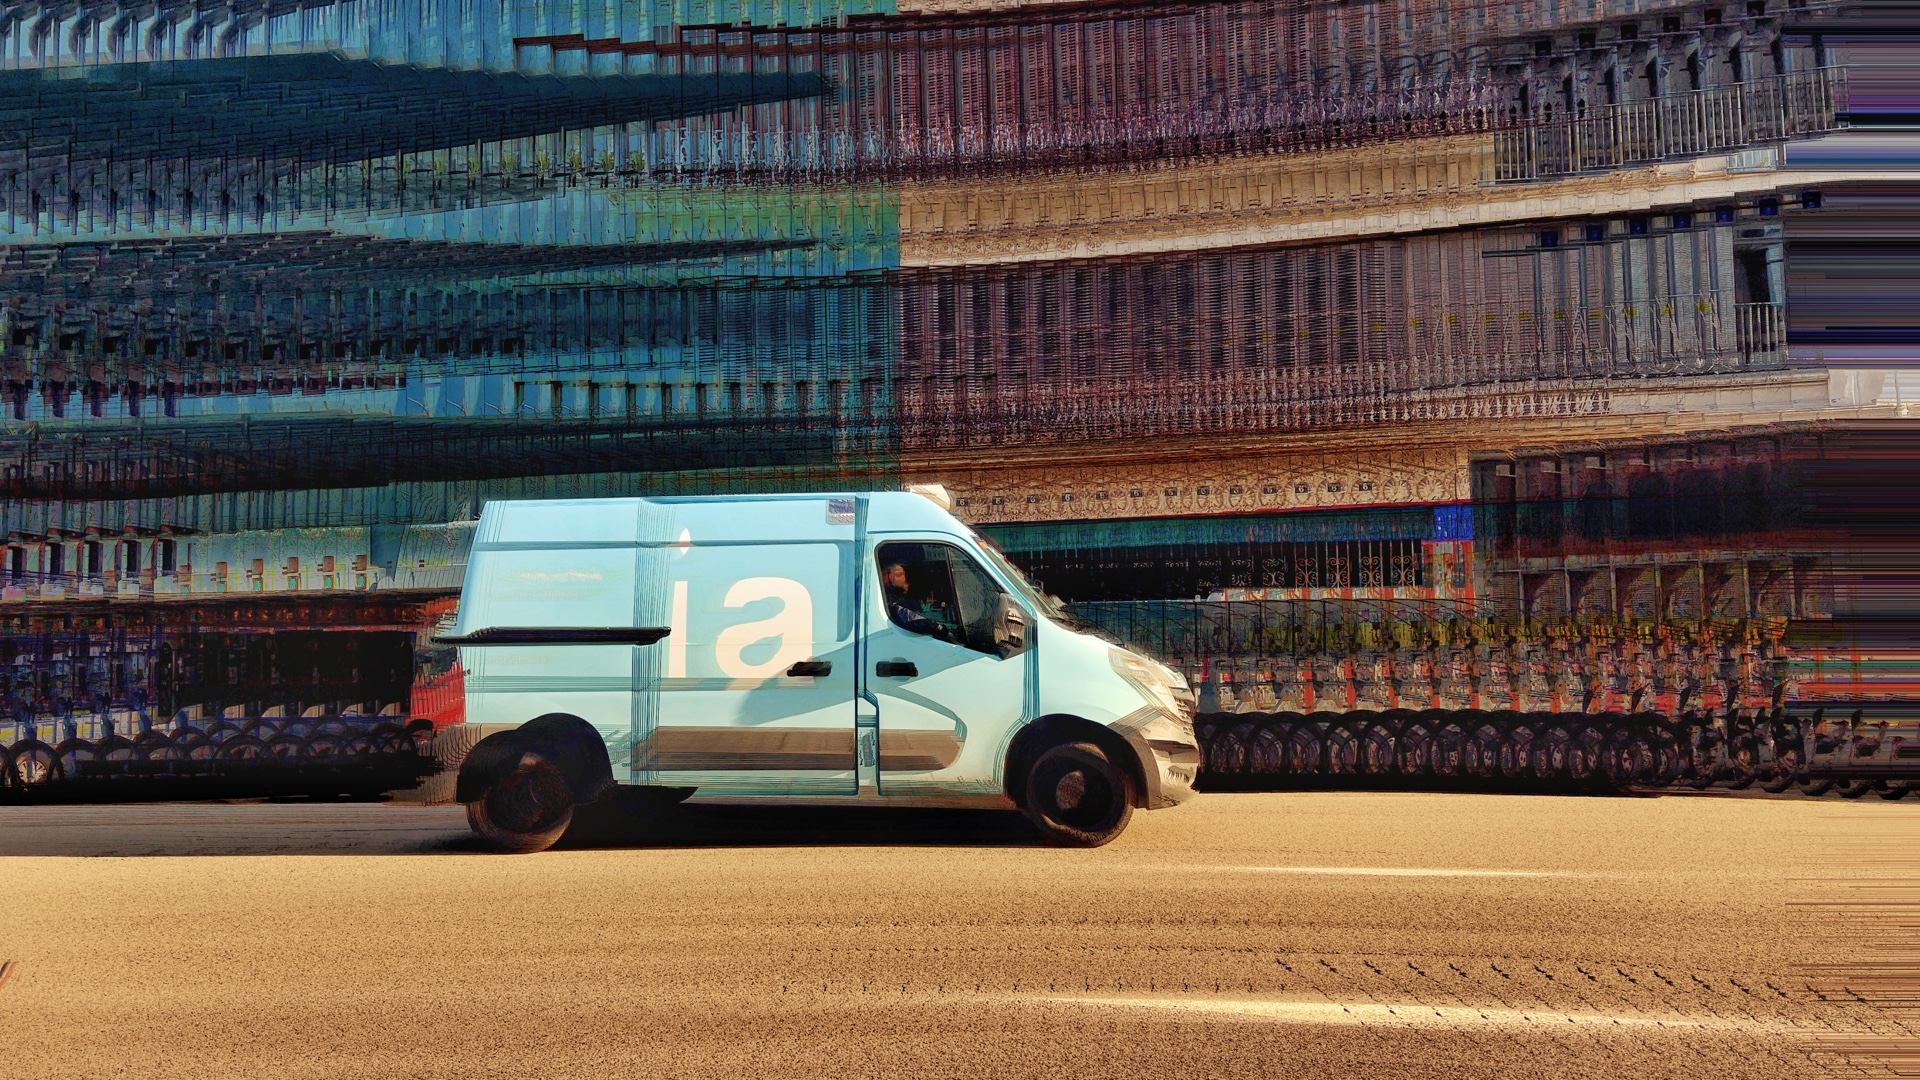 Blauer Lieferwagen fährt seitlich vorbei, der Hintergrund ist durch Einsatz der App Bluristic verwischt und unscharf